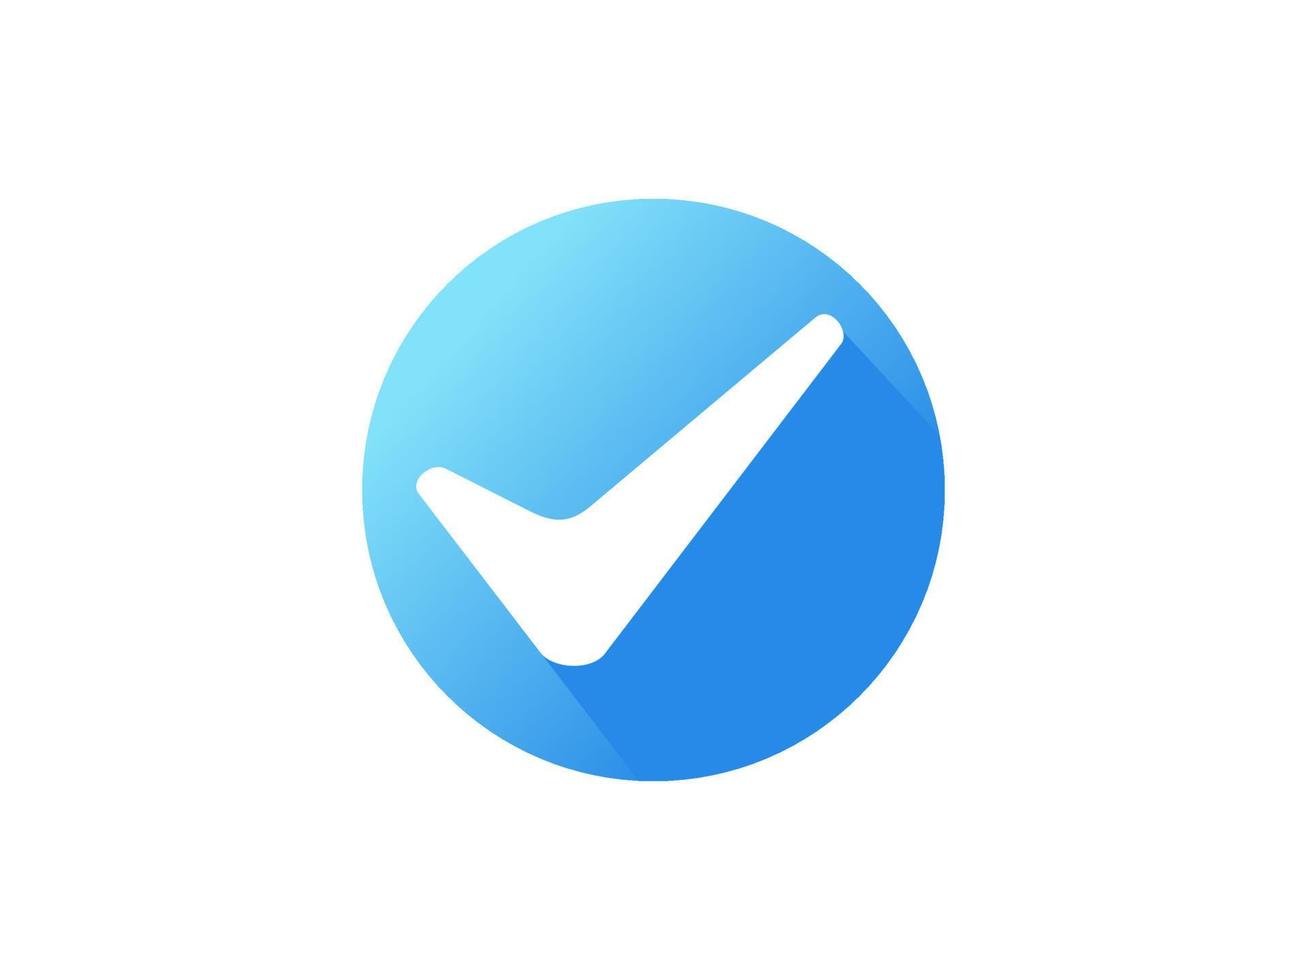 modern goedgekeurd icoon. witte pijl vinkje met blauwe cirkel vorm sparkle star sticker label geïsoleerd op een witte achtergrond. platte vector pictogram ontwerpelementen voor websjablonen.